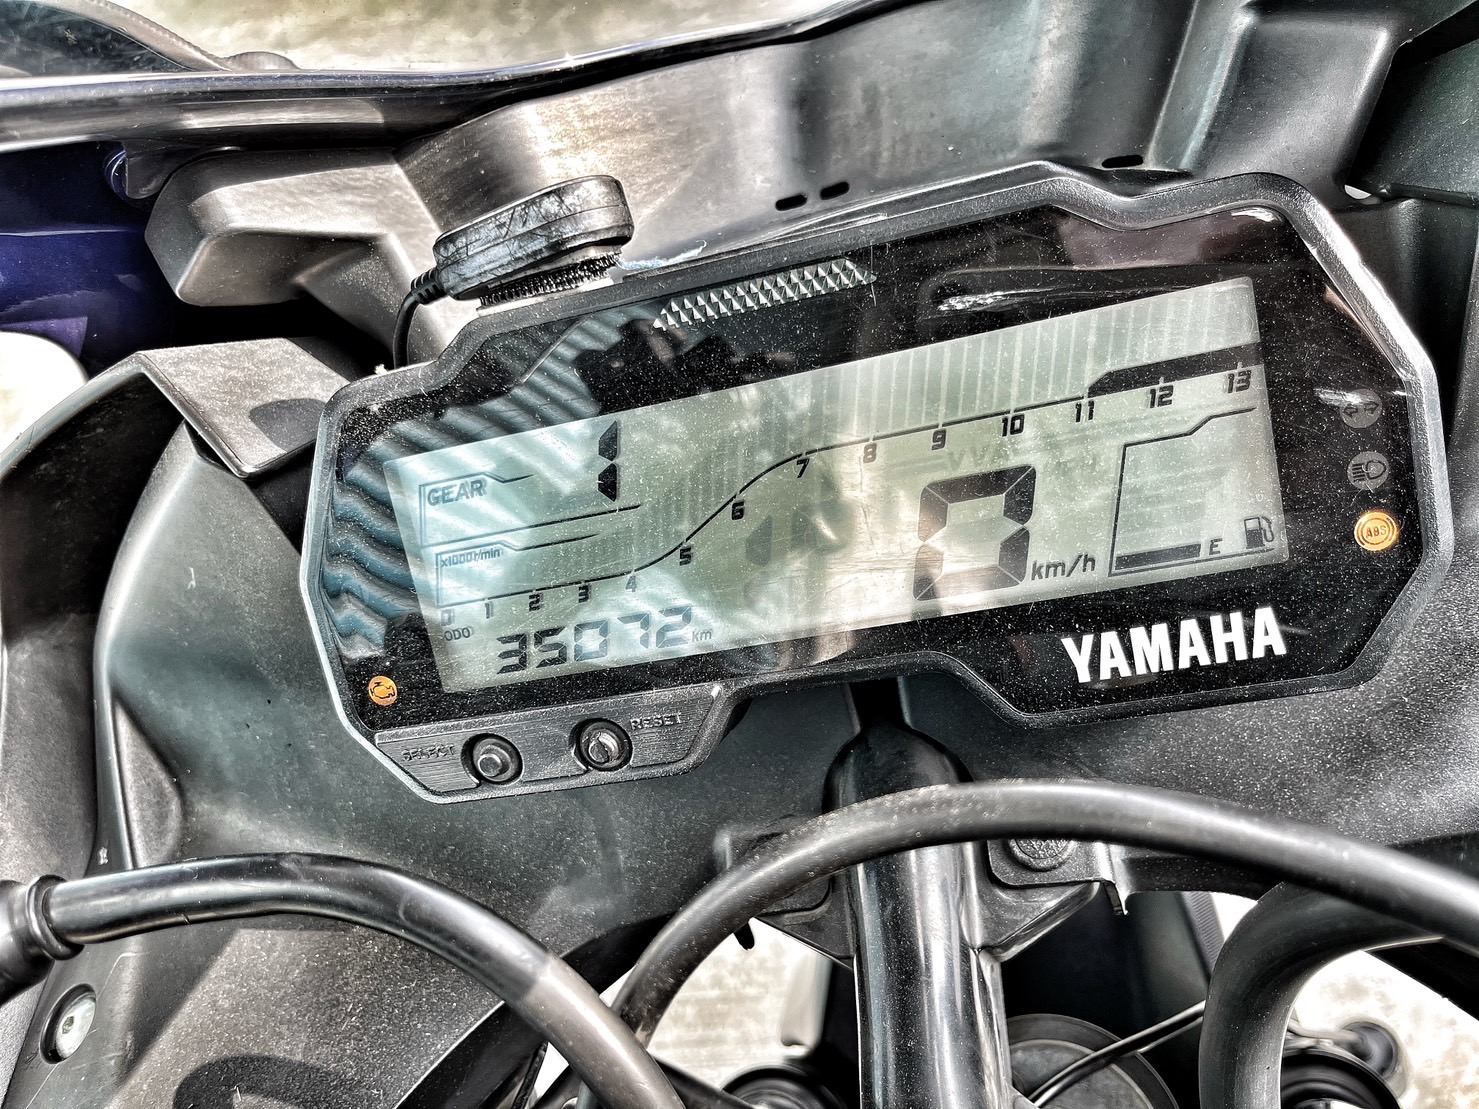 YAMAHA YZF-R15 - 中古/二手車出售中 行車記錄器 手機架 基本改裝 小資族二手重機買賣 | 小資族二手重機買賣